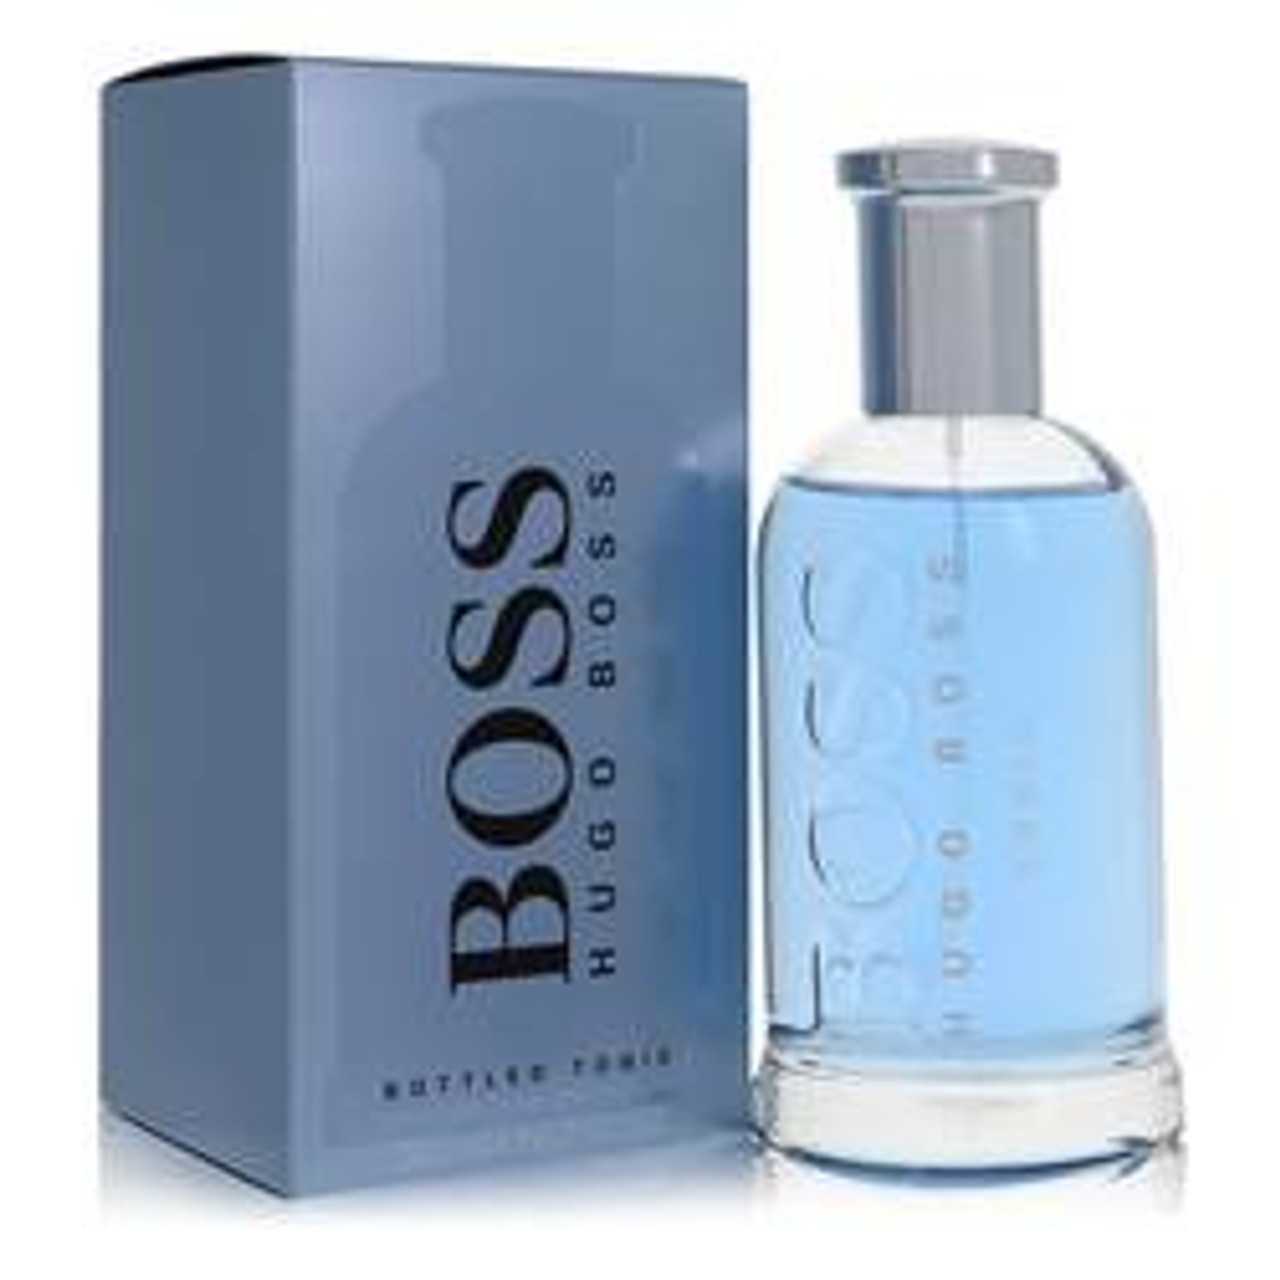 Boss Bottled Tonic Cologne By Hugo Boss Eau De Toilette Spray 6.7 oz for Men - *Pre-Order